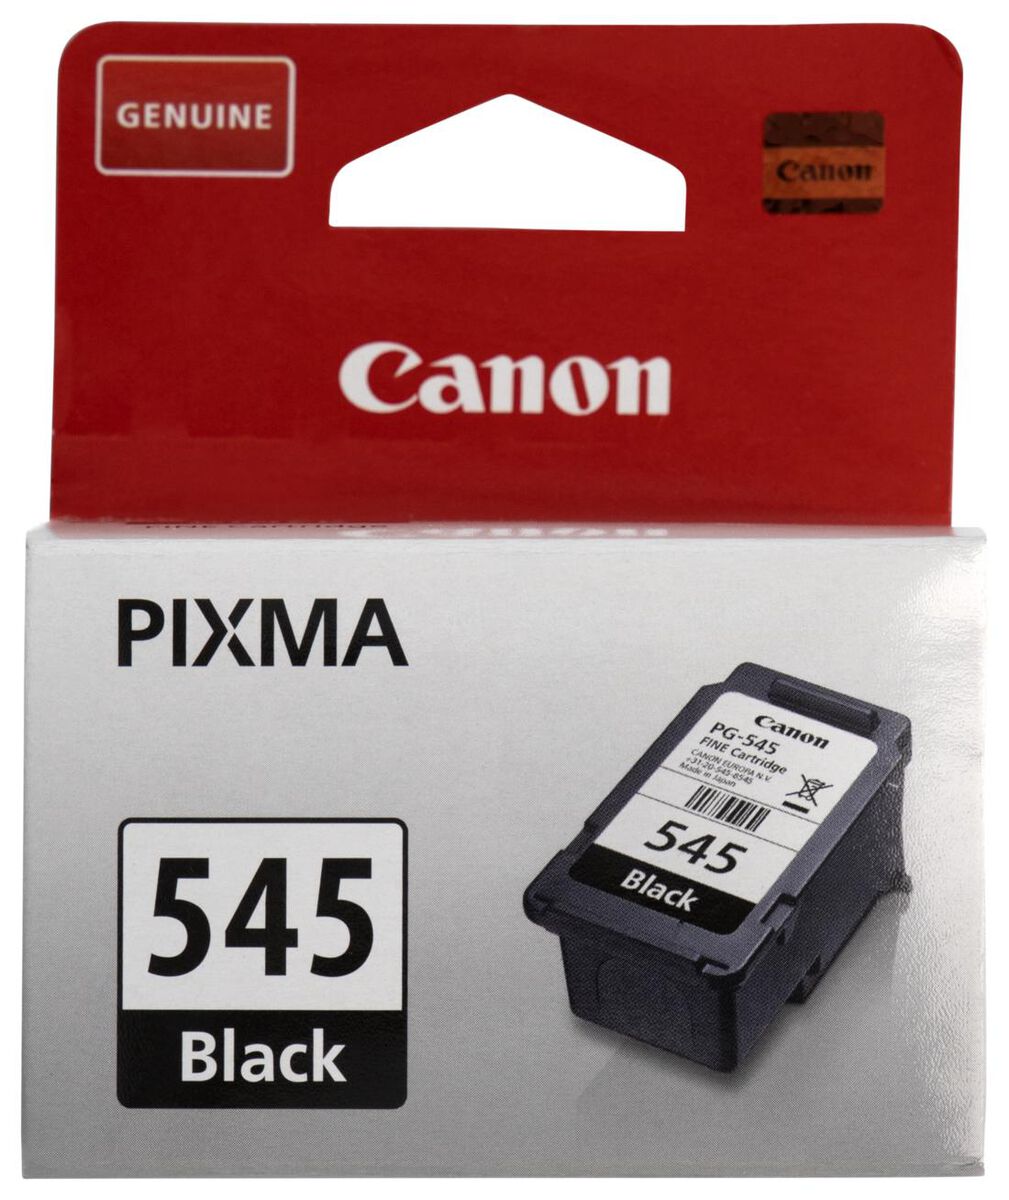 bevolking Perth Mand cartridge Canon PG-545 zwart - HEMA